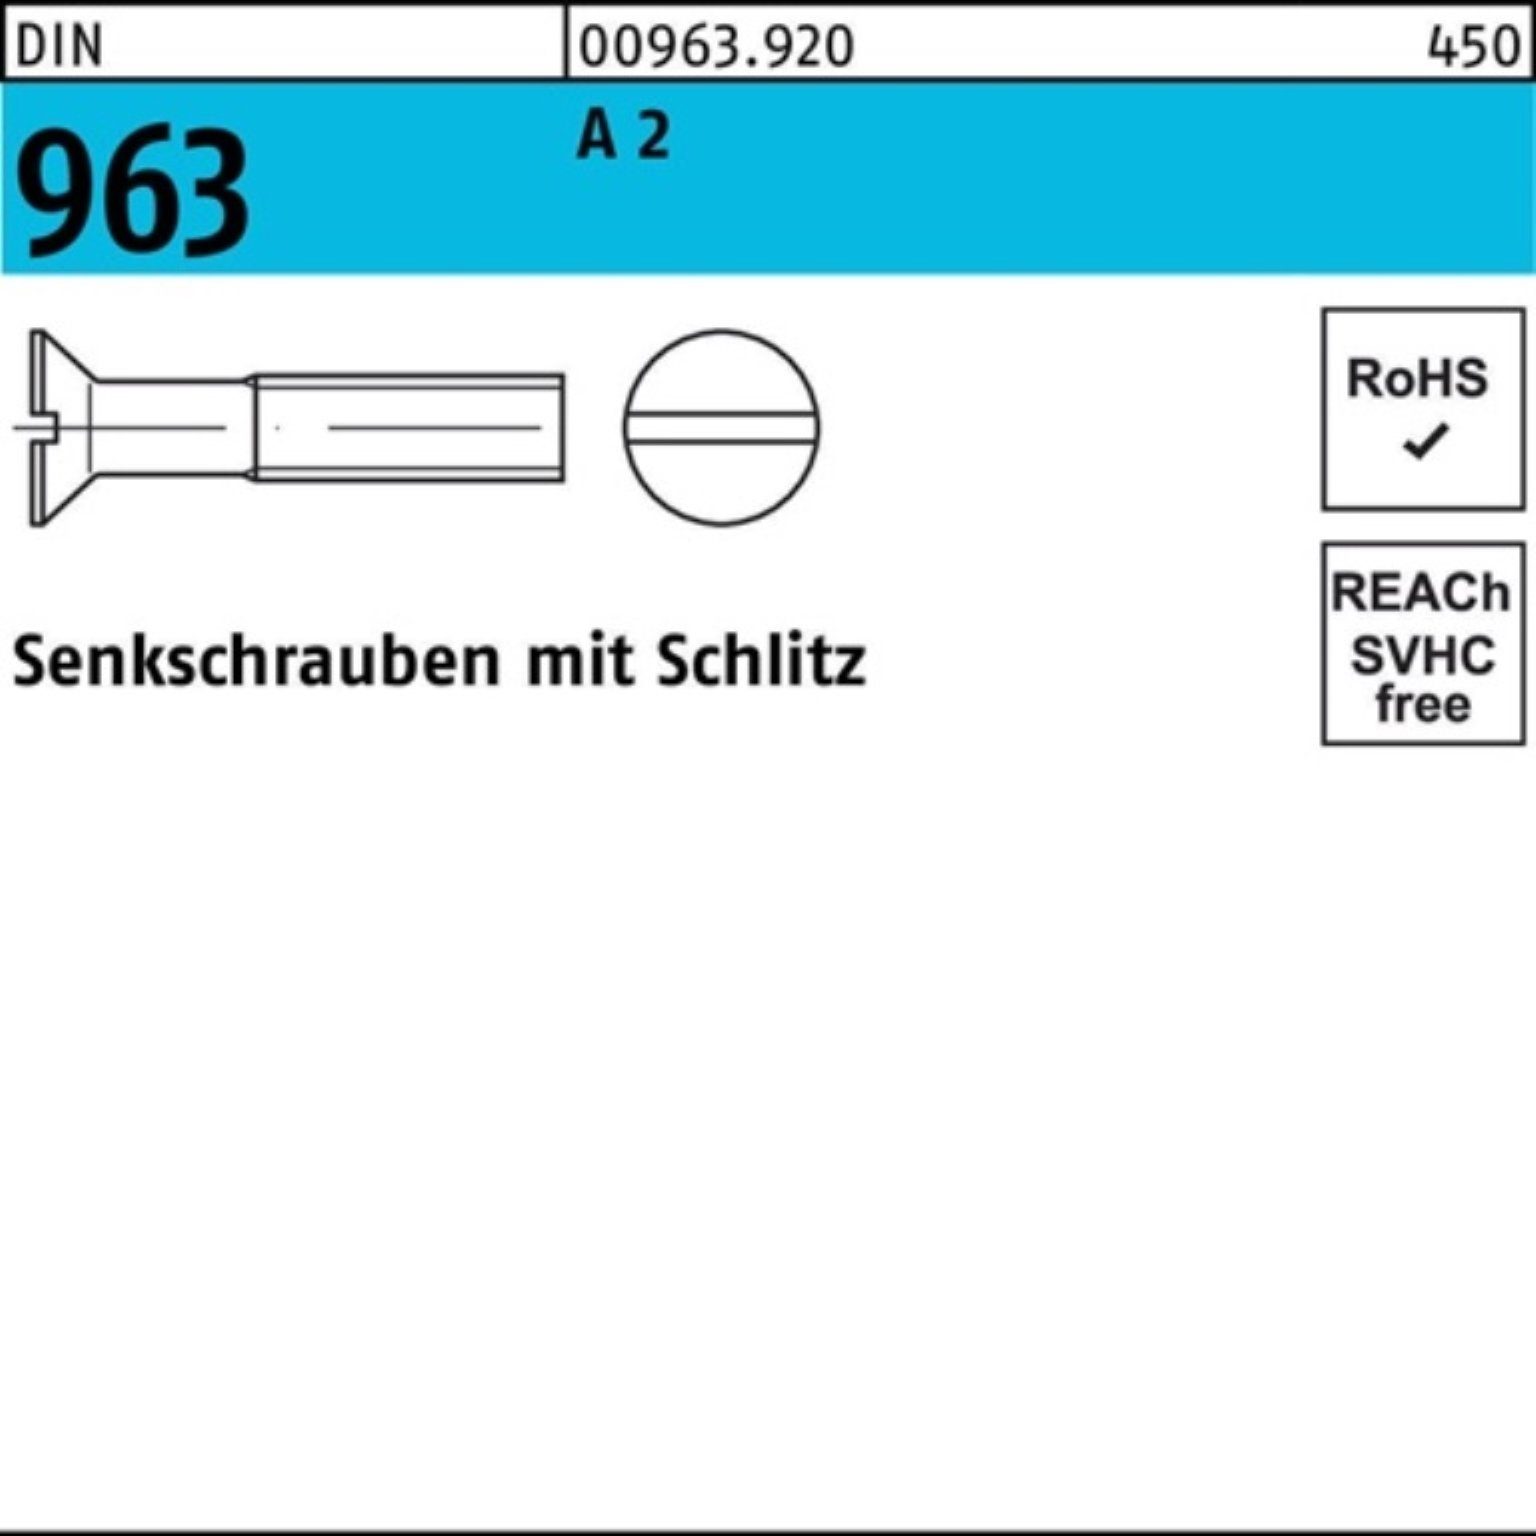 Reyher Senkschraube 1000er Pack A Senkschraube M3x 2 DIN 1000 30 Stück DIN 96 963 Schlitz